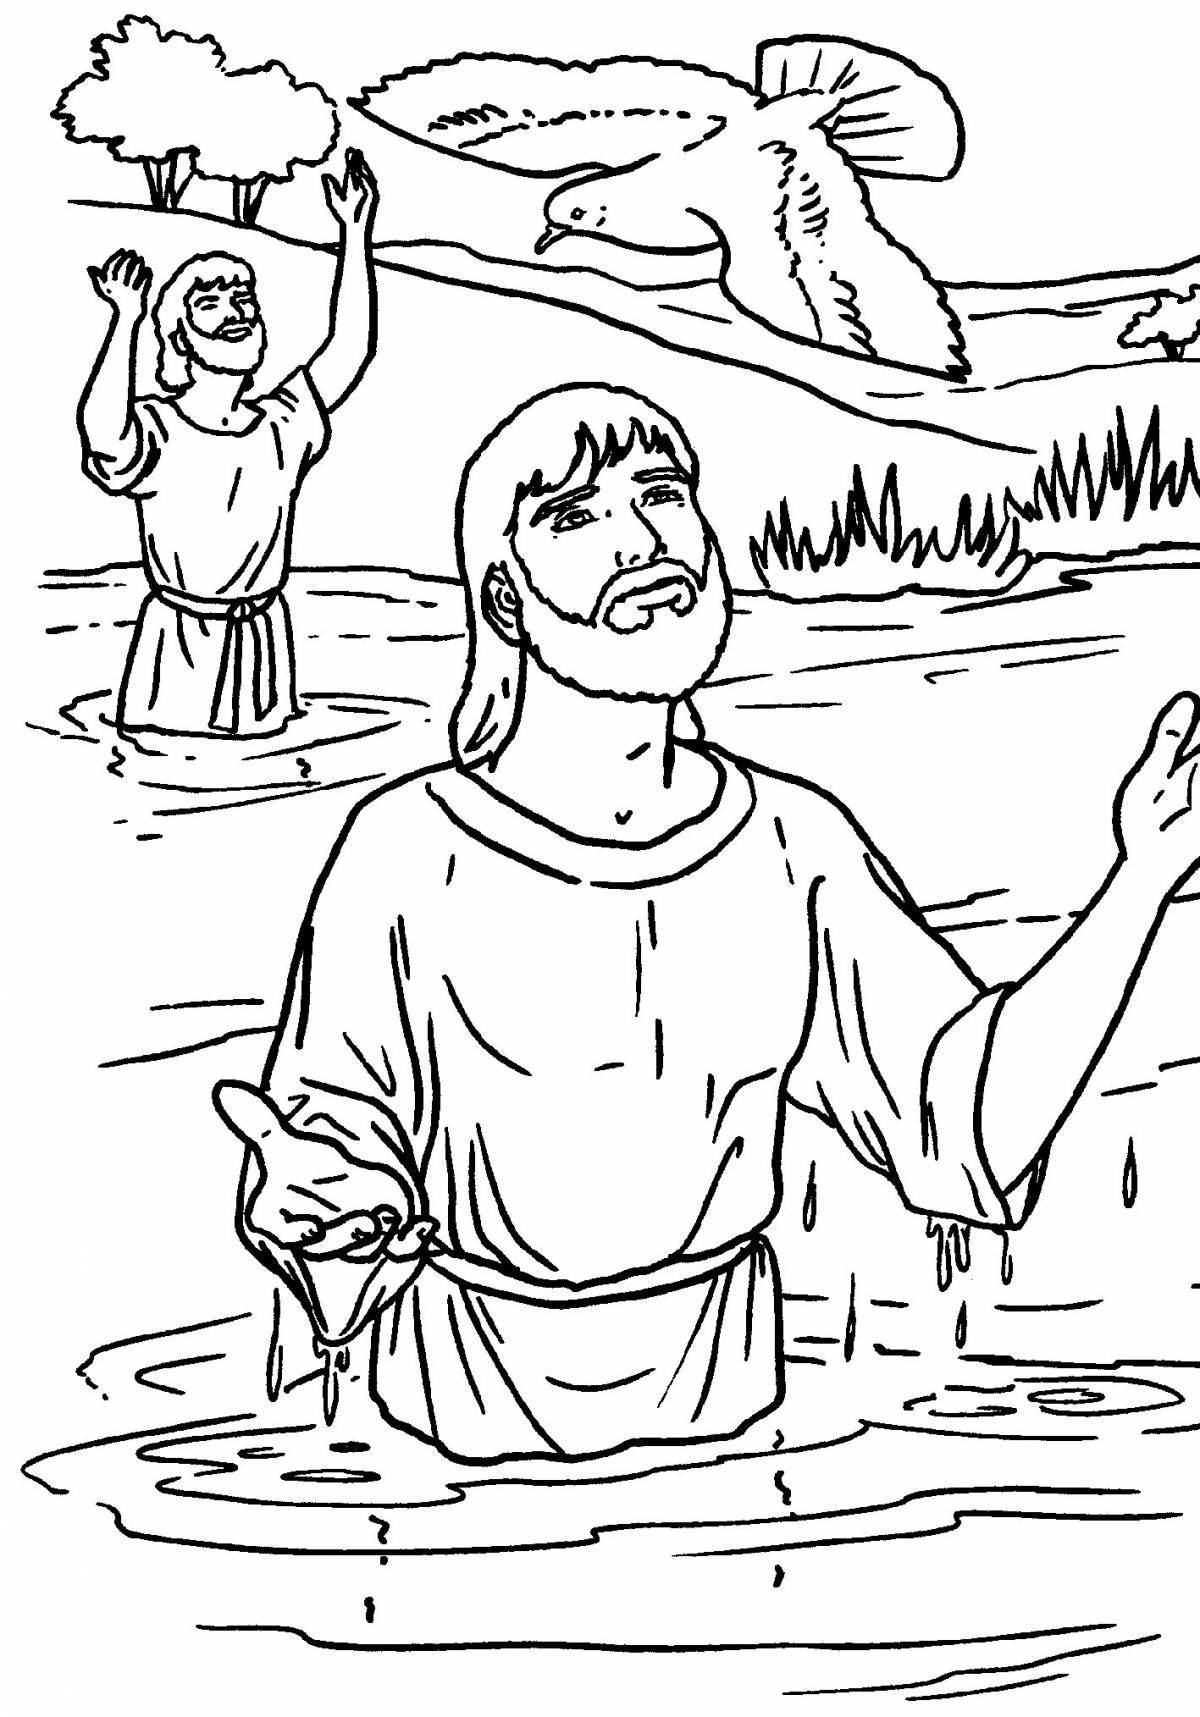 Великолепная раскраска крещения иисуса христа для детей